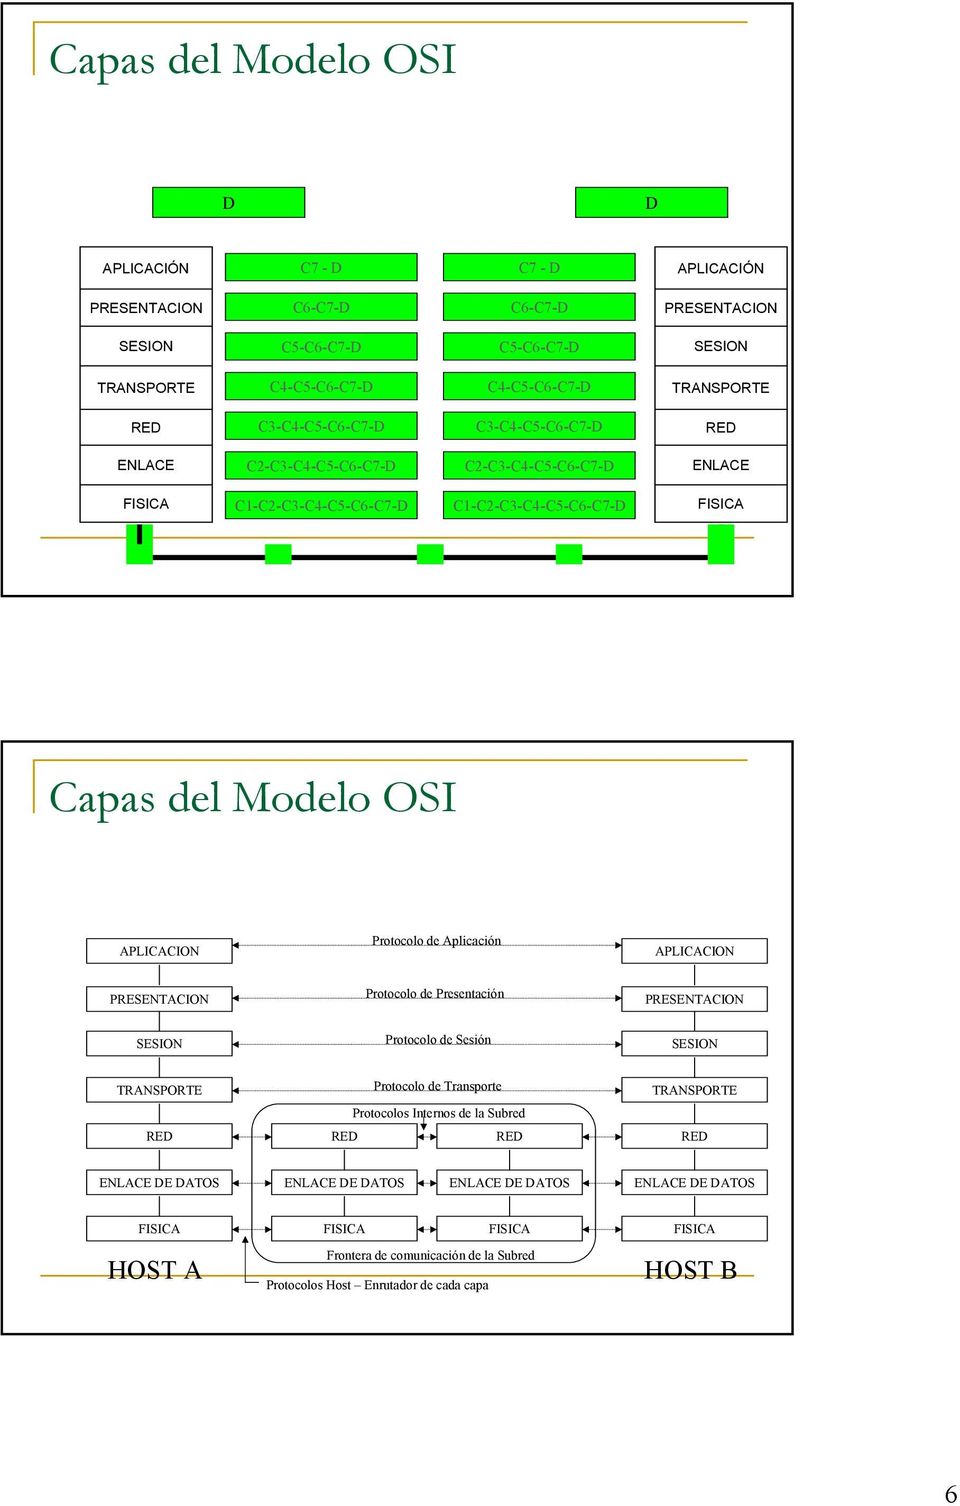 C1-C2-C3-C4-C5-C6-C7-D Capas del Modelo OSI APLICACION Protocolo de Aplicación APLICACION Protocolo de Presentación Protocolo de